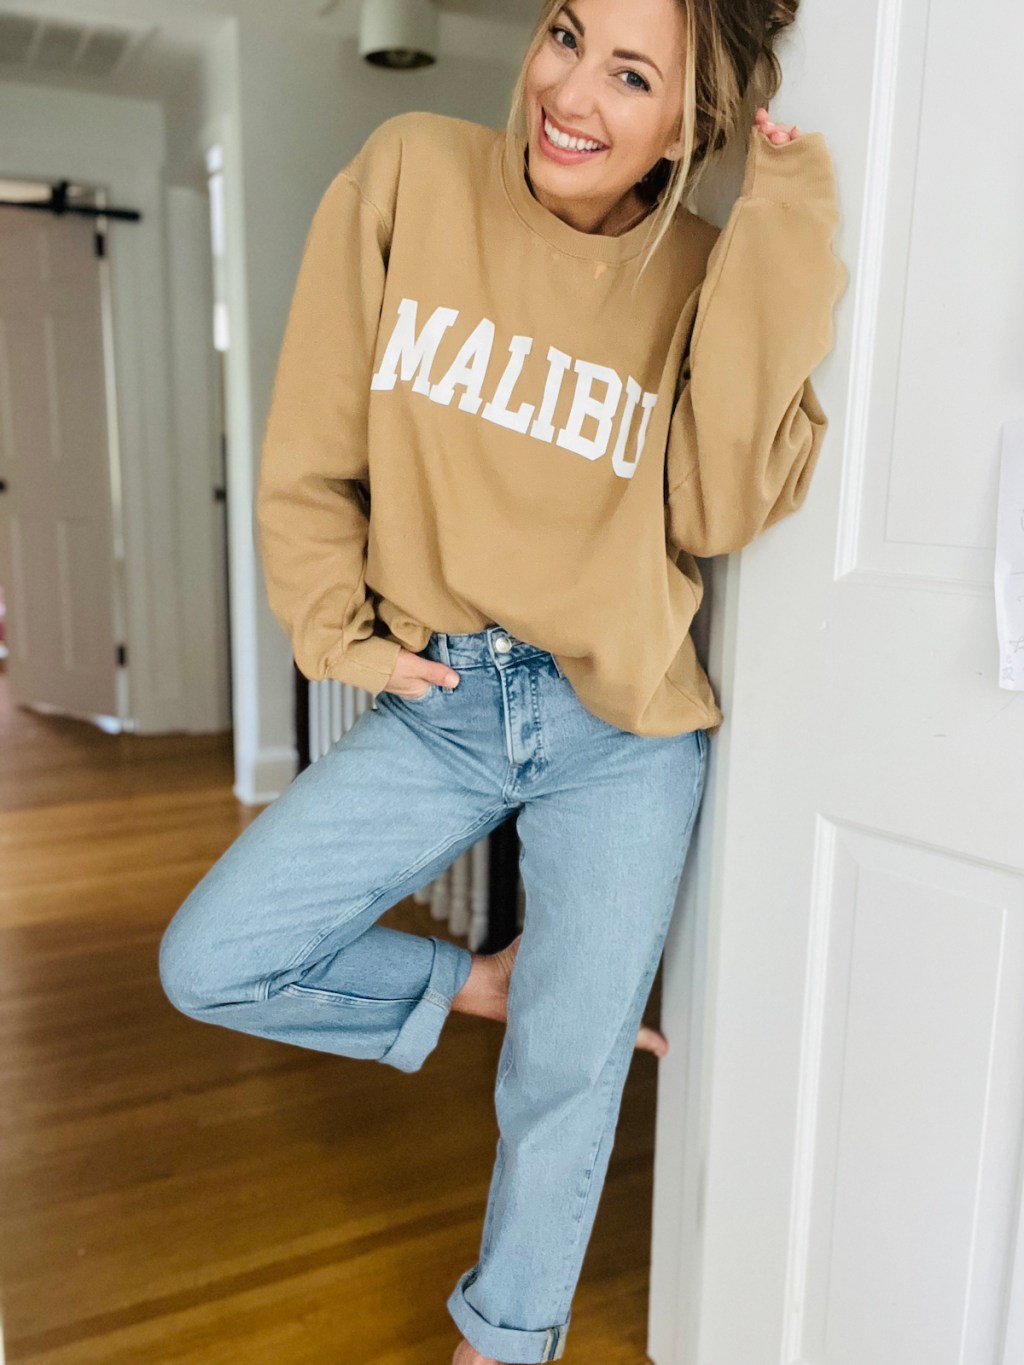 woman standing in doorway wearing loose jeans and malibu sweatshirt